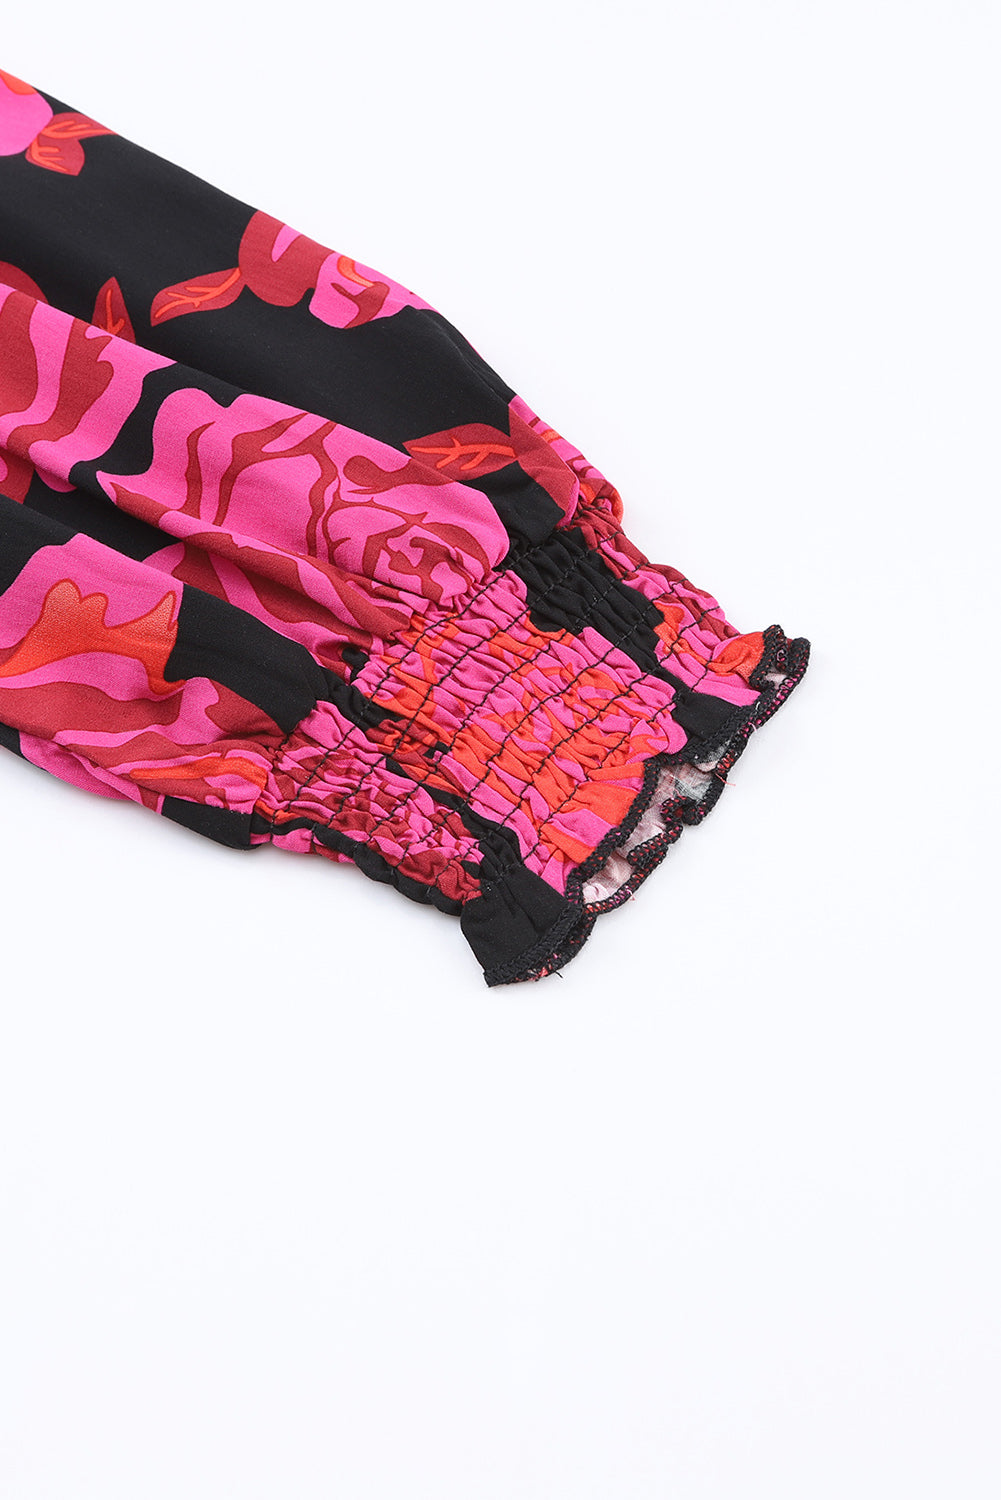 Chemise à manches longues et poignets froncés à fleurs roses